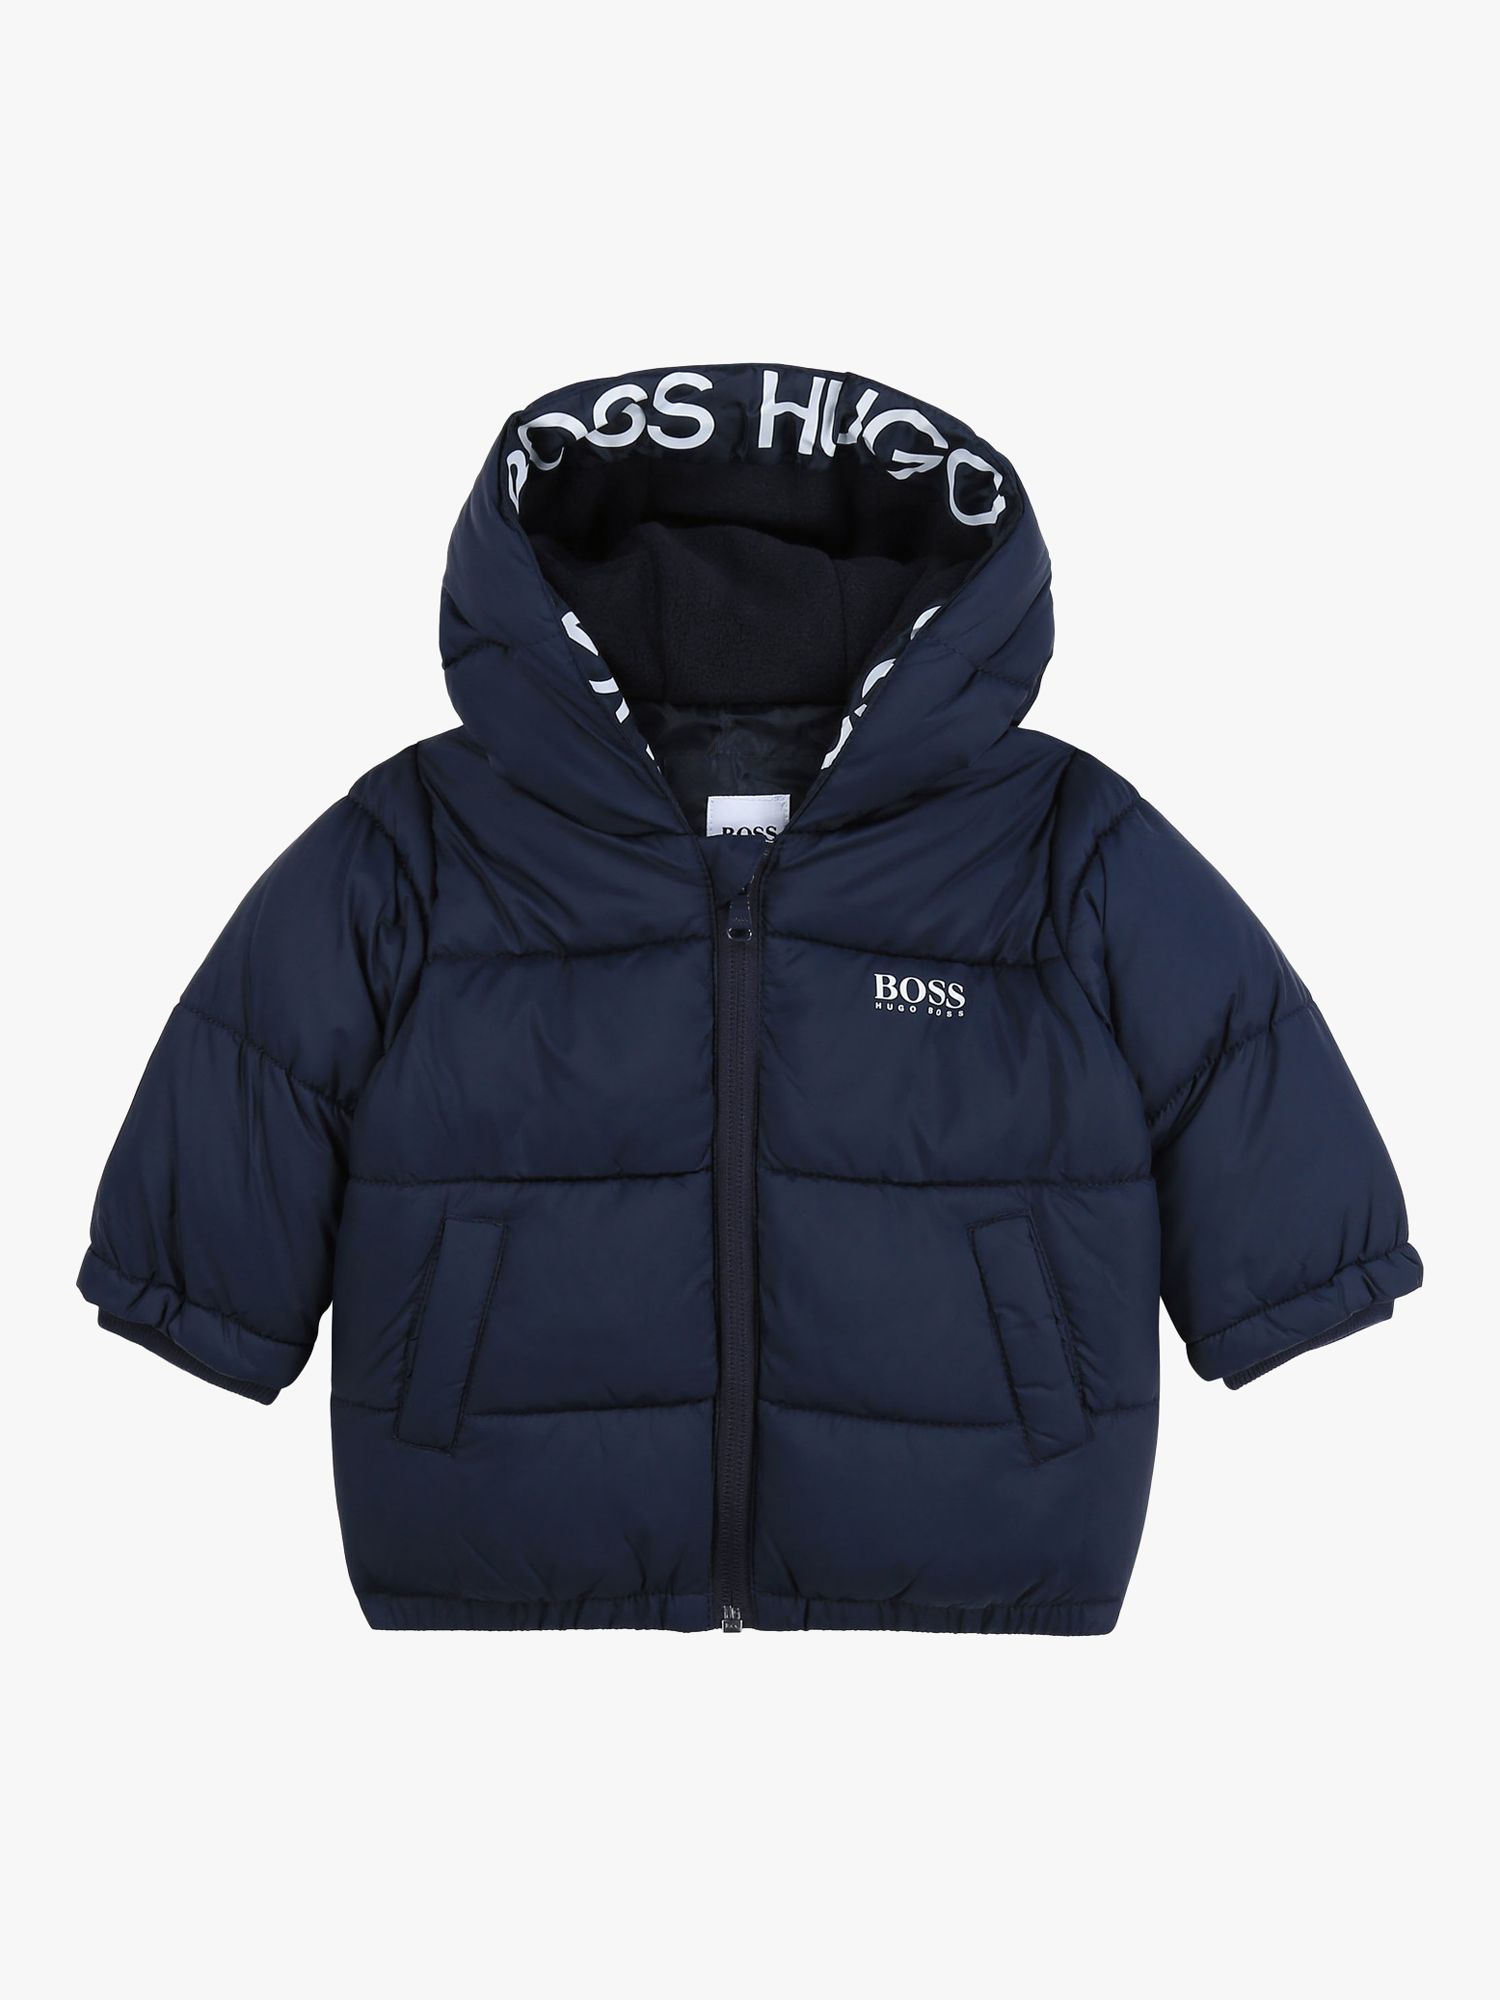 hugo boss jacket baby